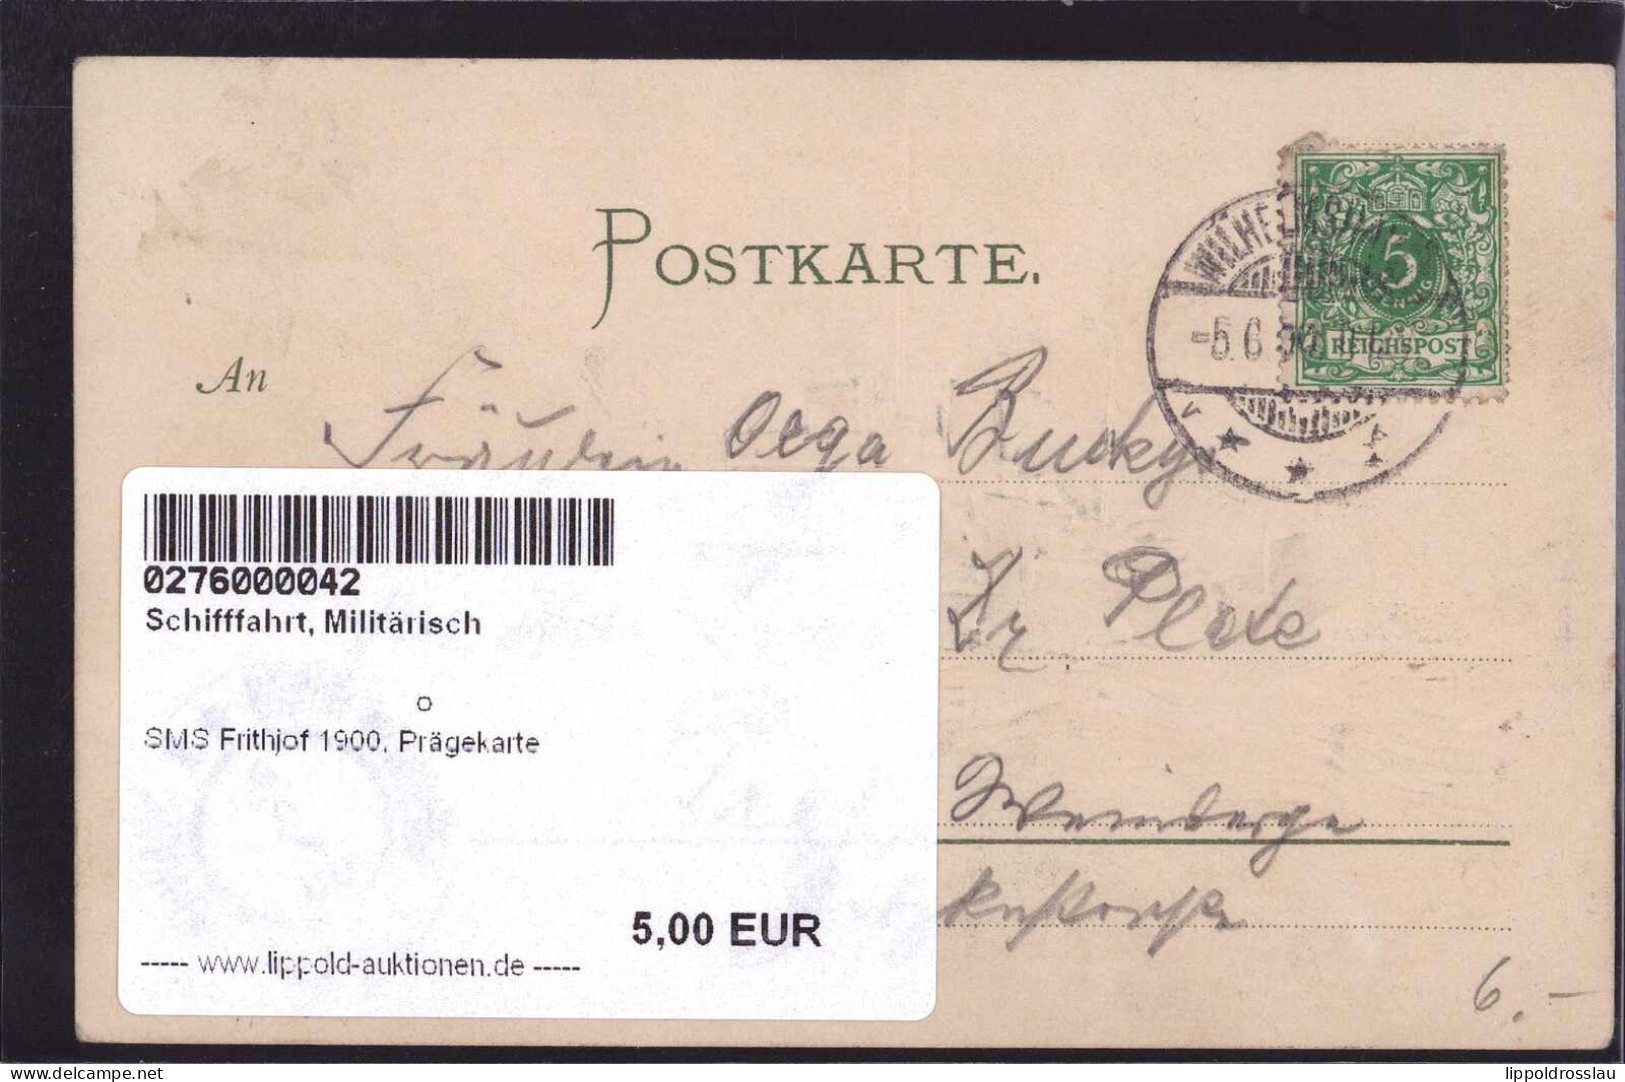 SMS Frithjof 1900, Prägekarte - Oorlog